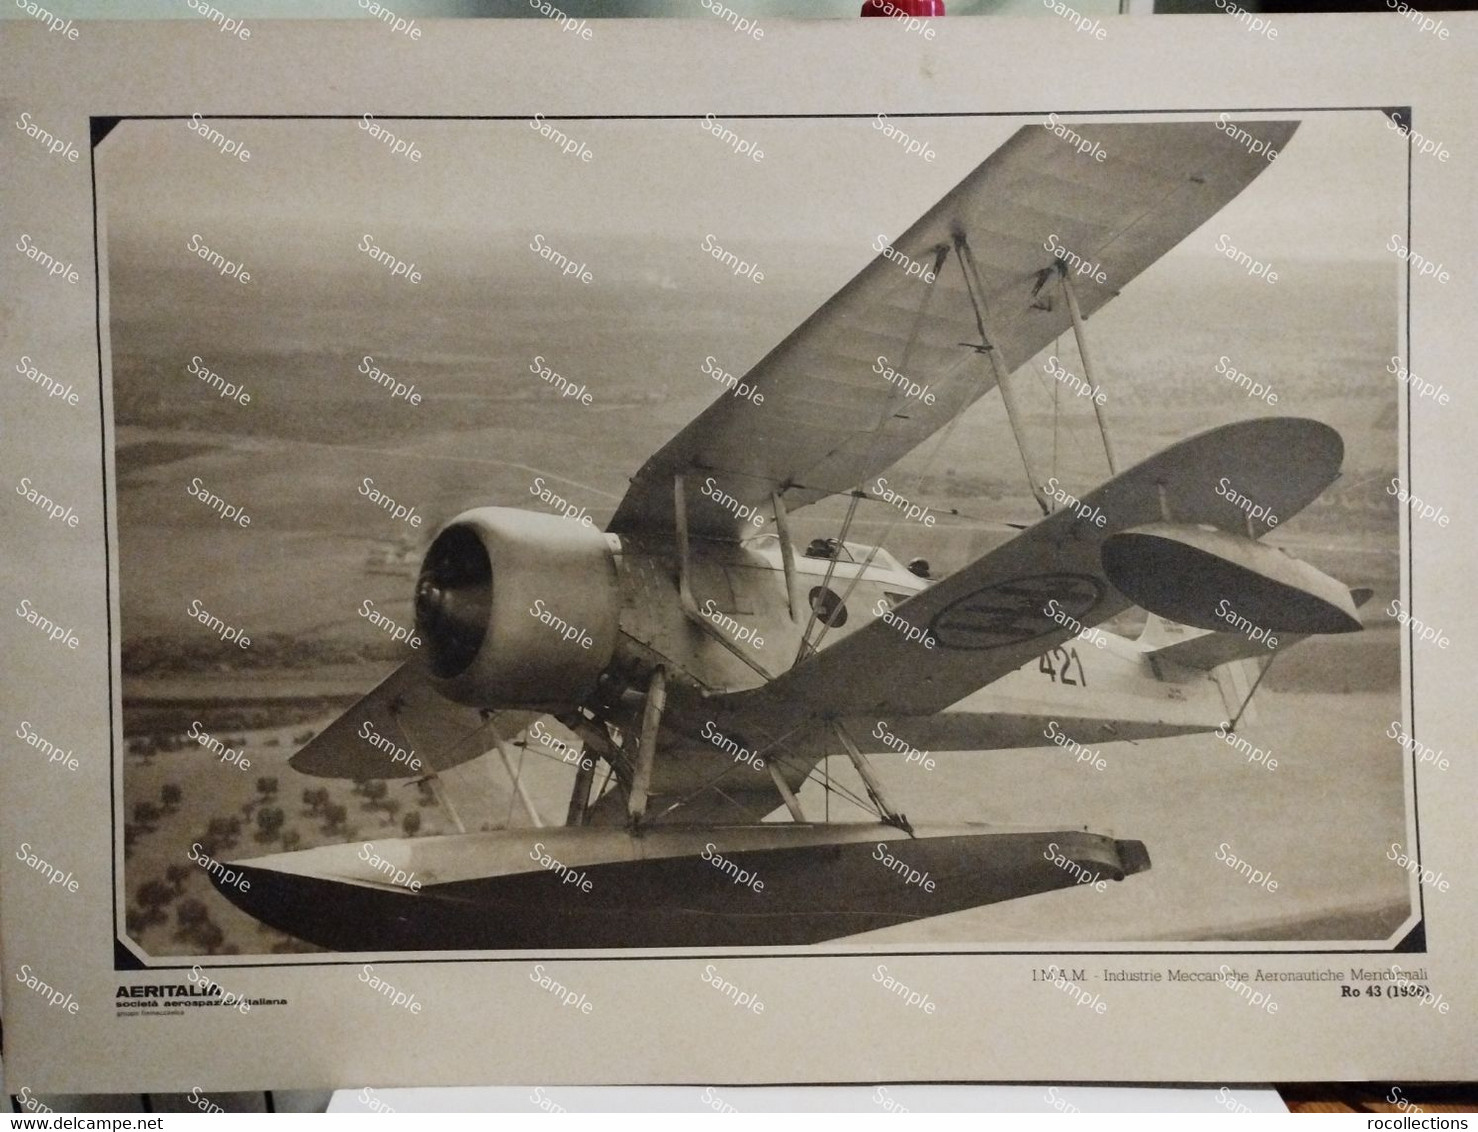 Foto Riproduzione Aviazione AERITALIANIndustrie Meccaniche Aeronautiche Meridionali Ro 43 1936 - Aviation